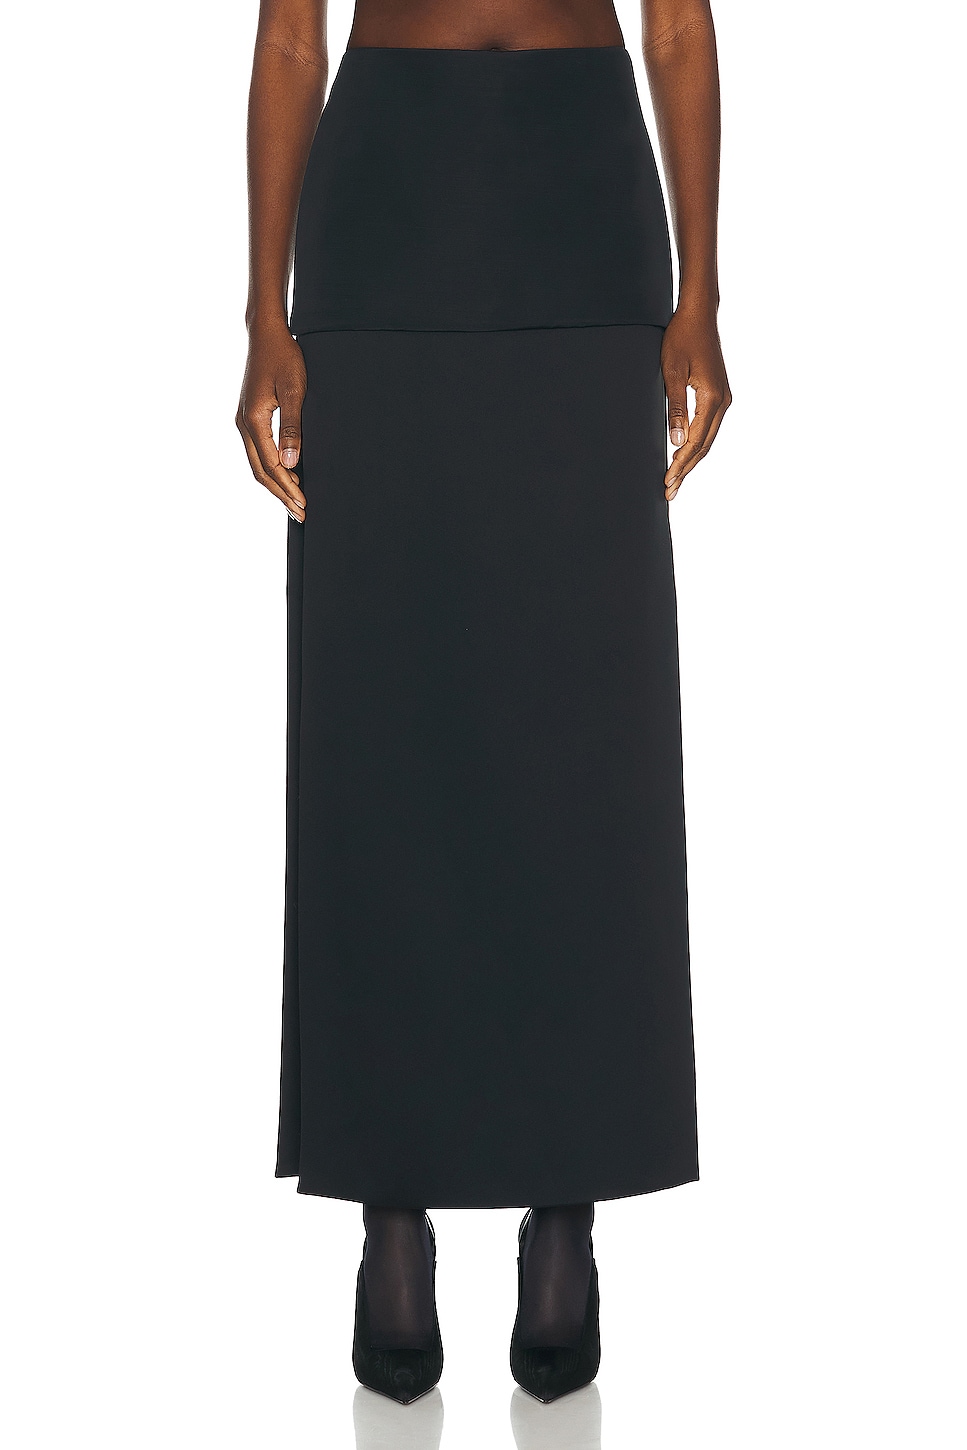 Image 1 of KHAITE Saxon Skirt in Black